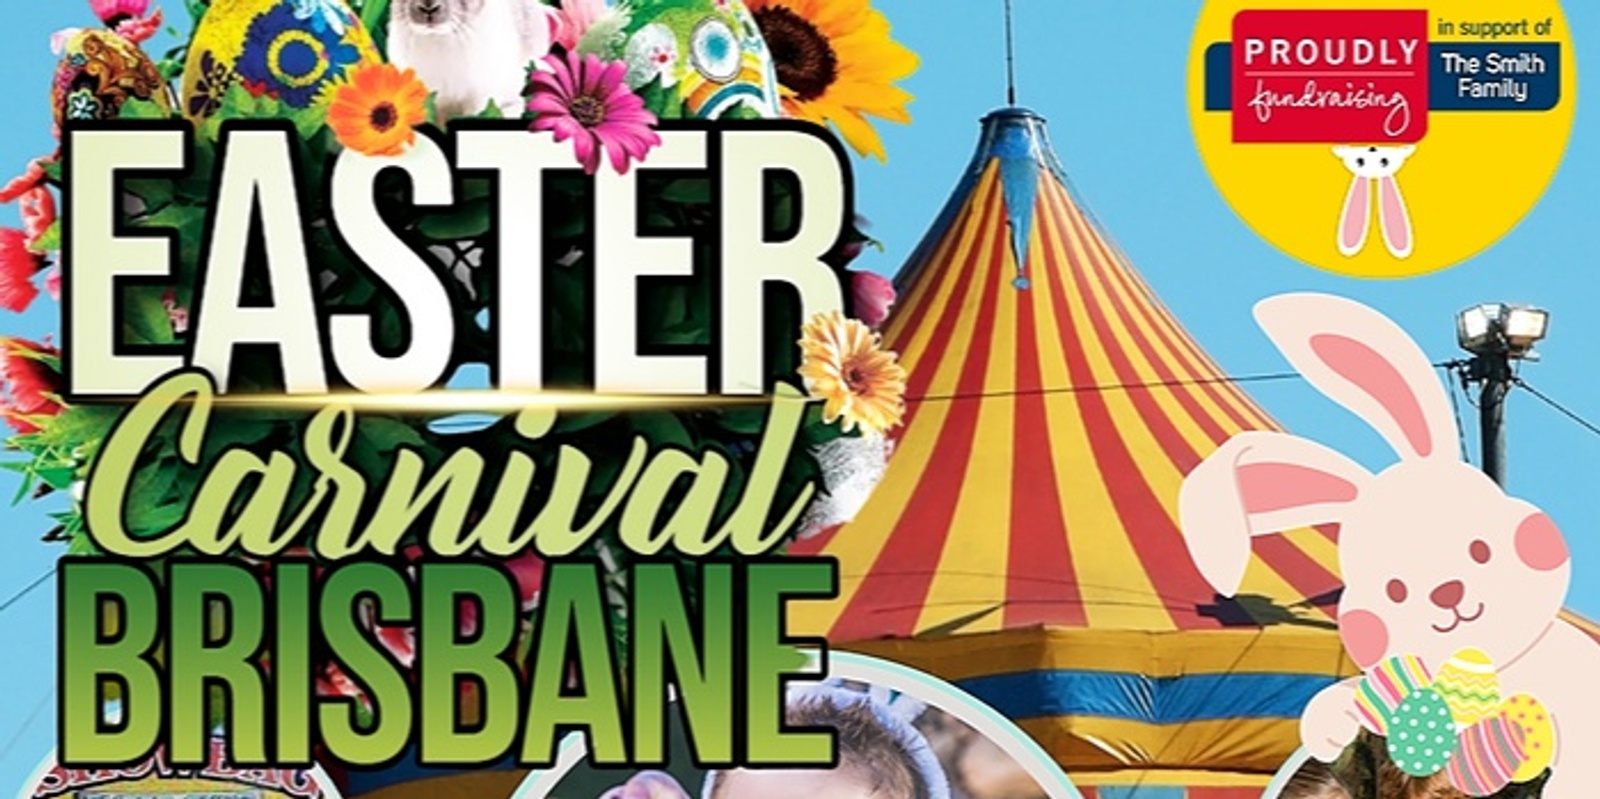 Banner image for Easter Carnival Brisbane